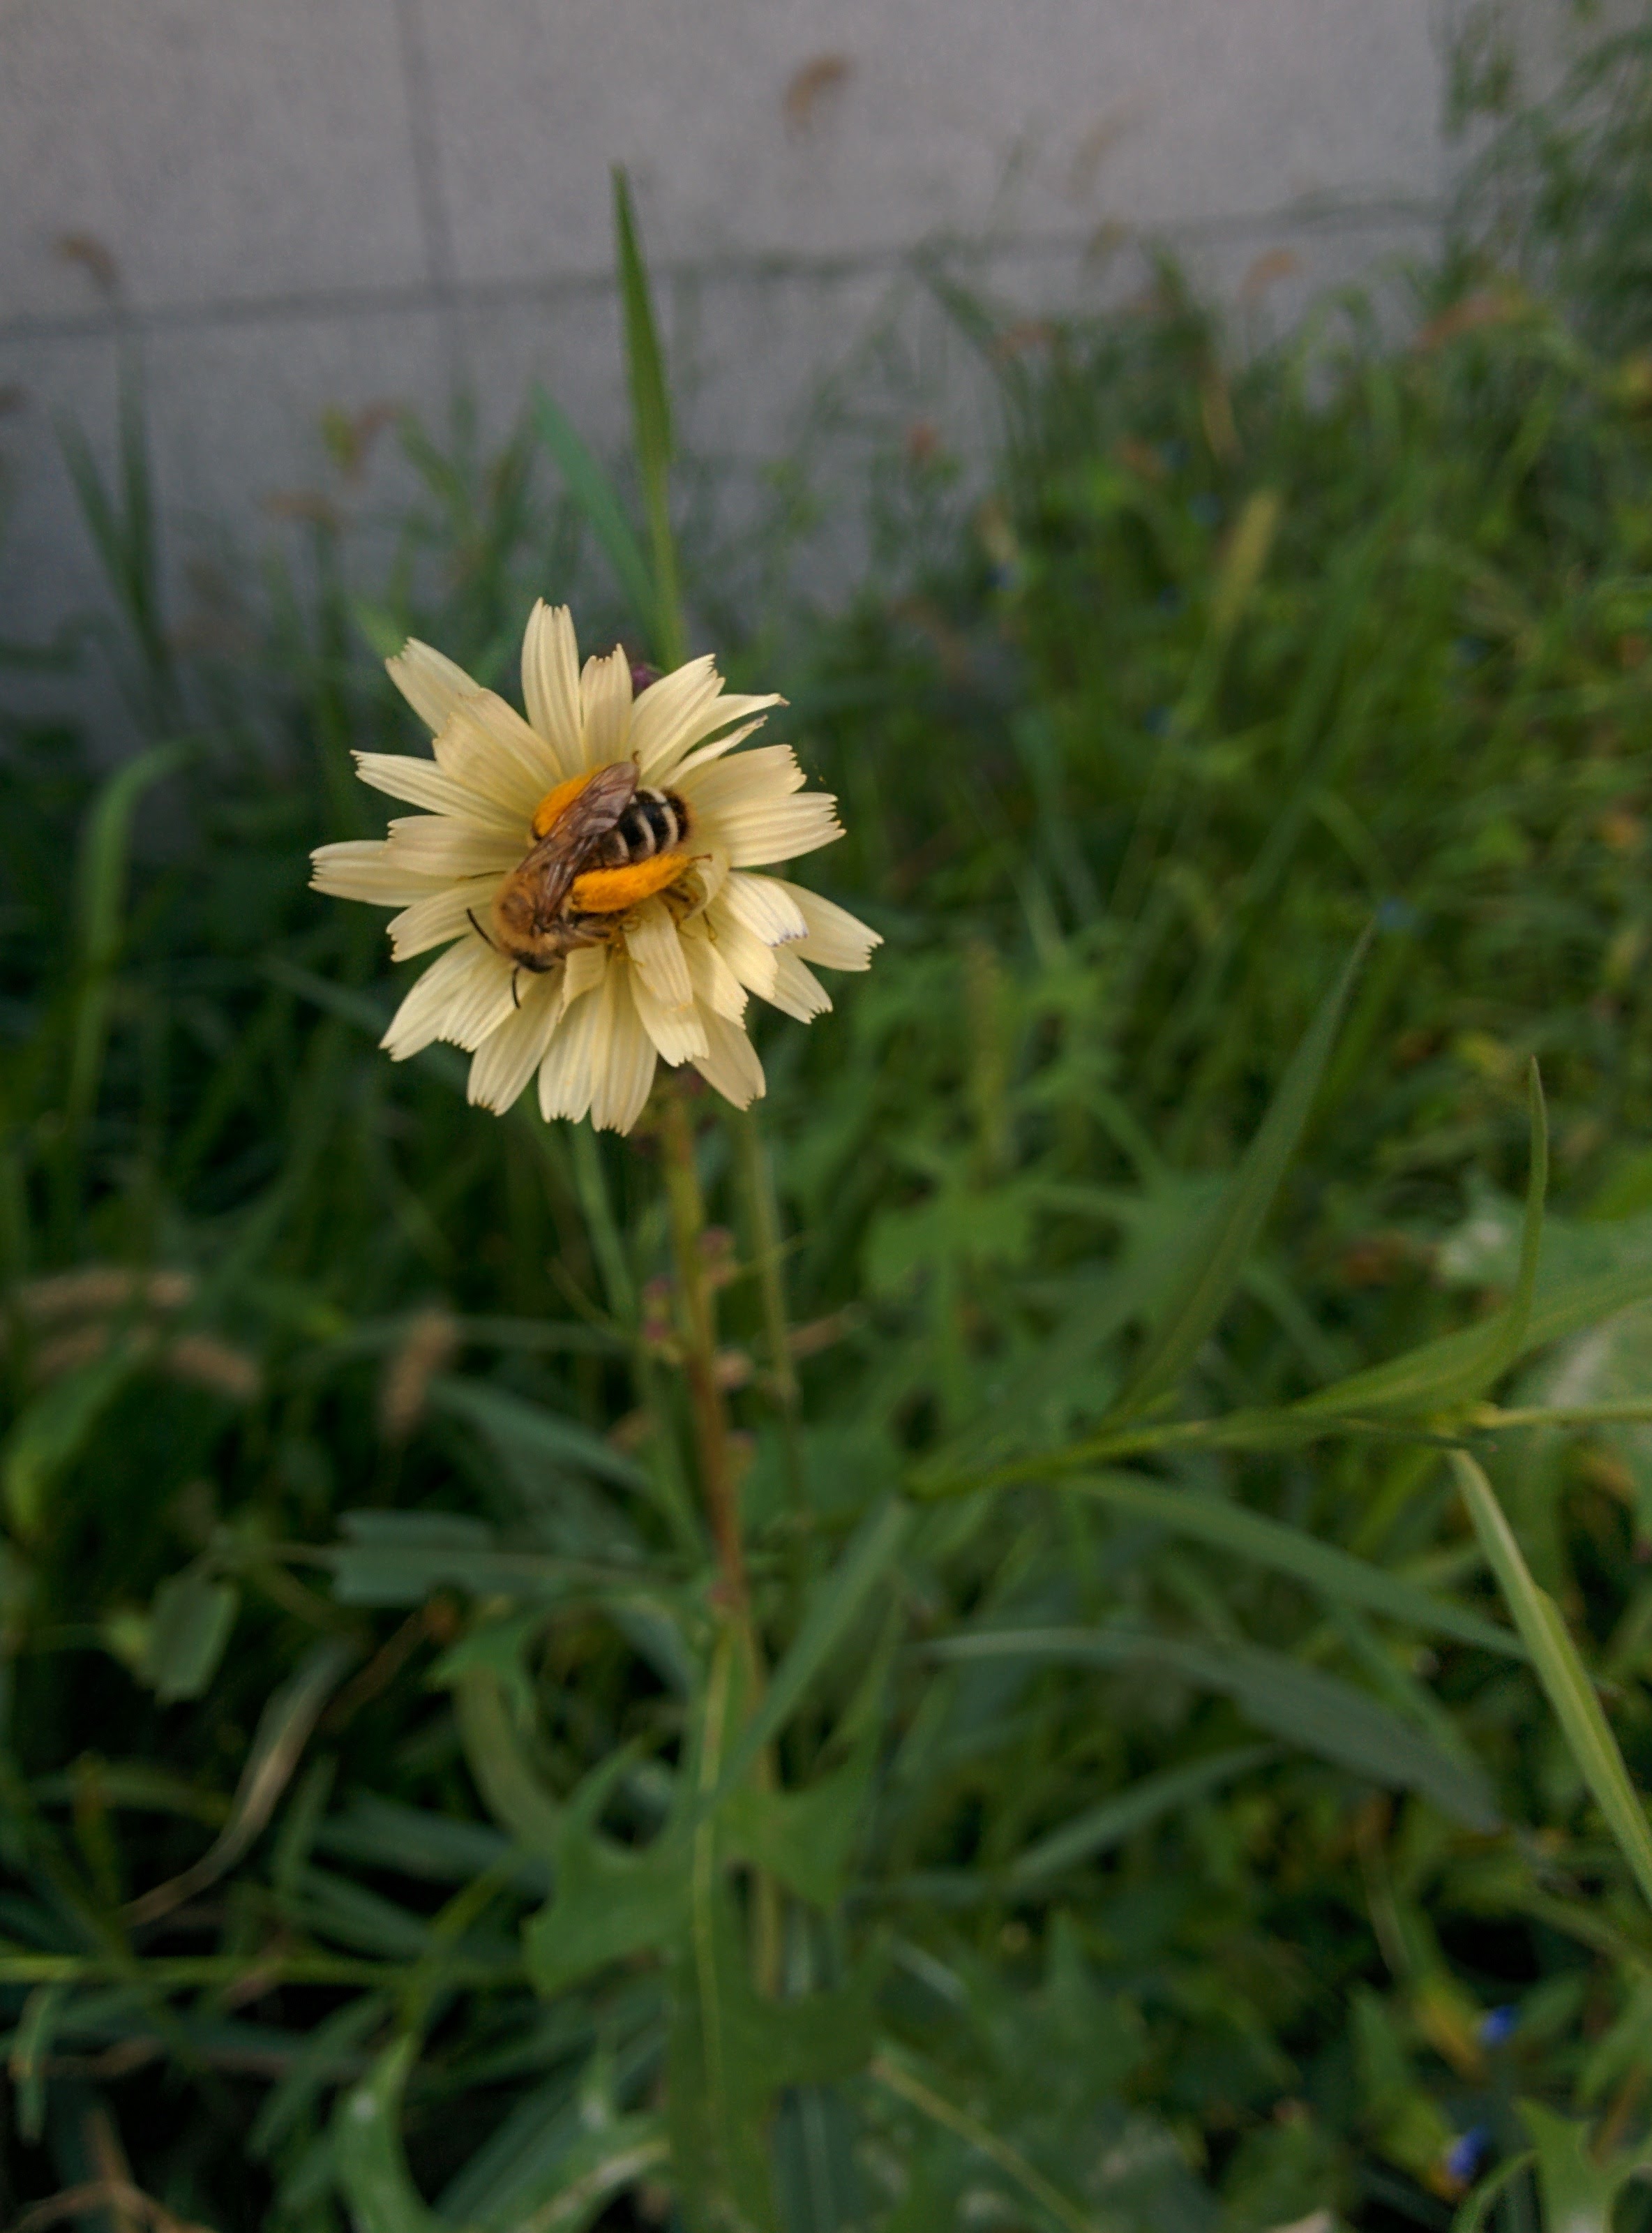 IMG_20150920_114432.jpg 털다리 꿀벌, 옅은 노란색 꽃(왕고들빼기)에서 쉬다.